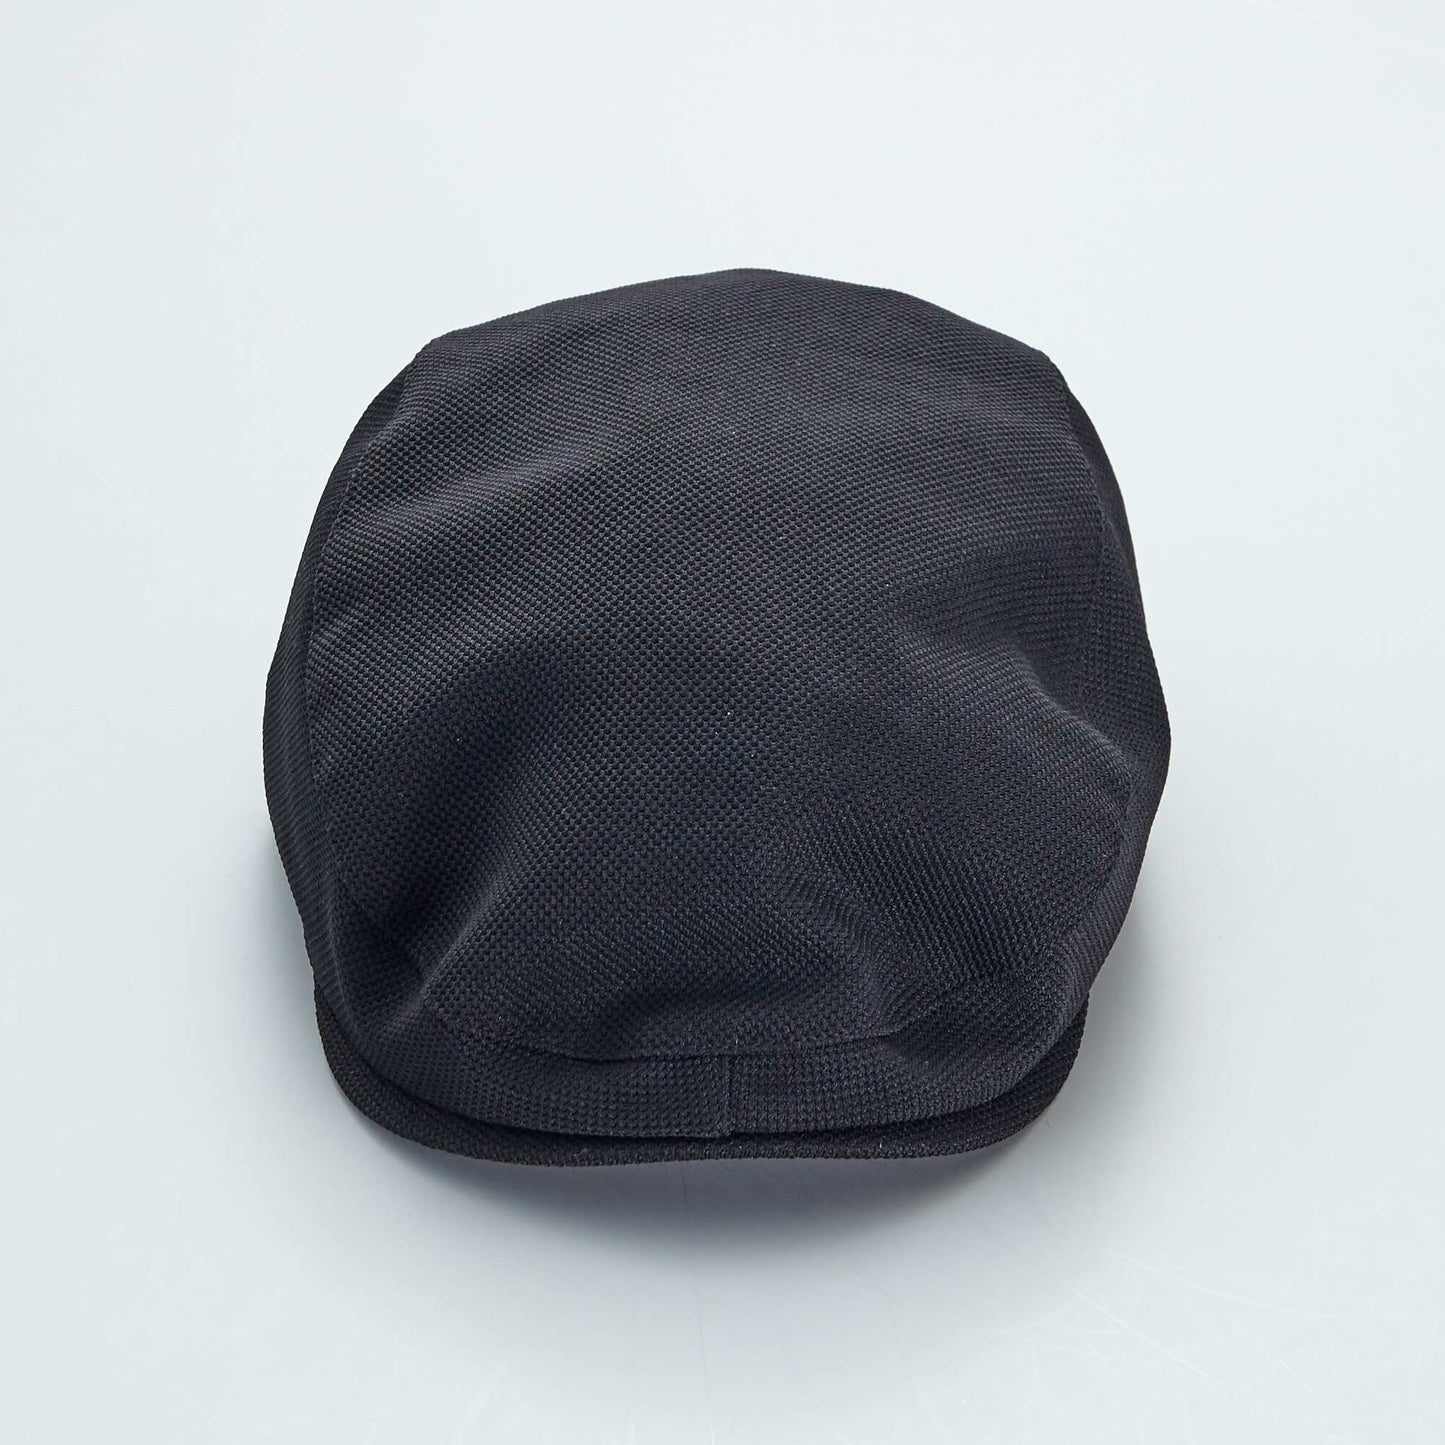 Baker-boy style cap BLACK